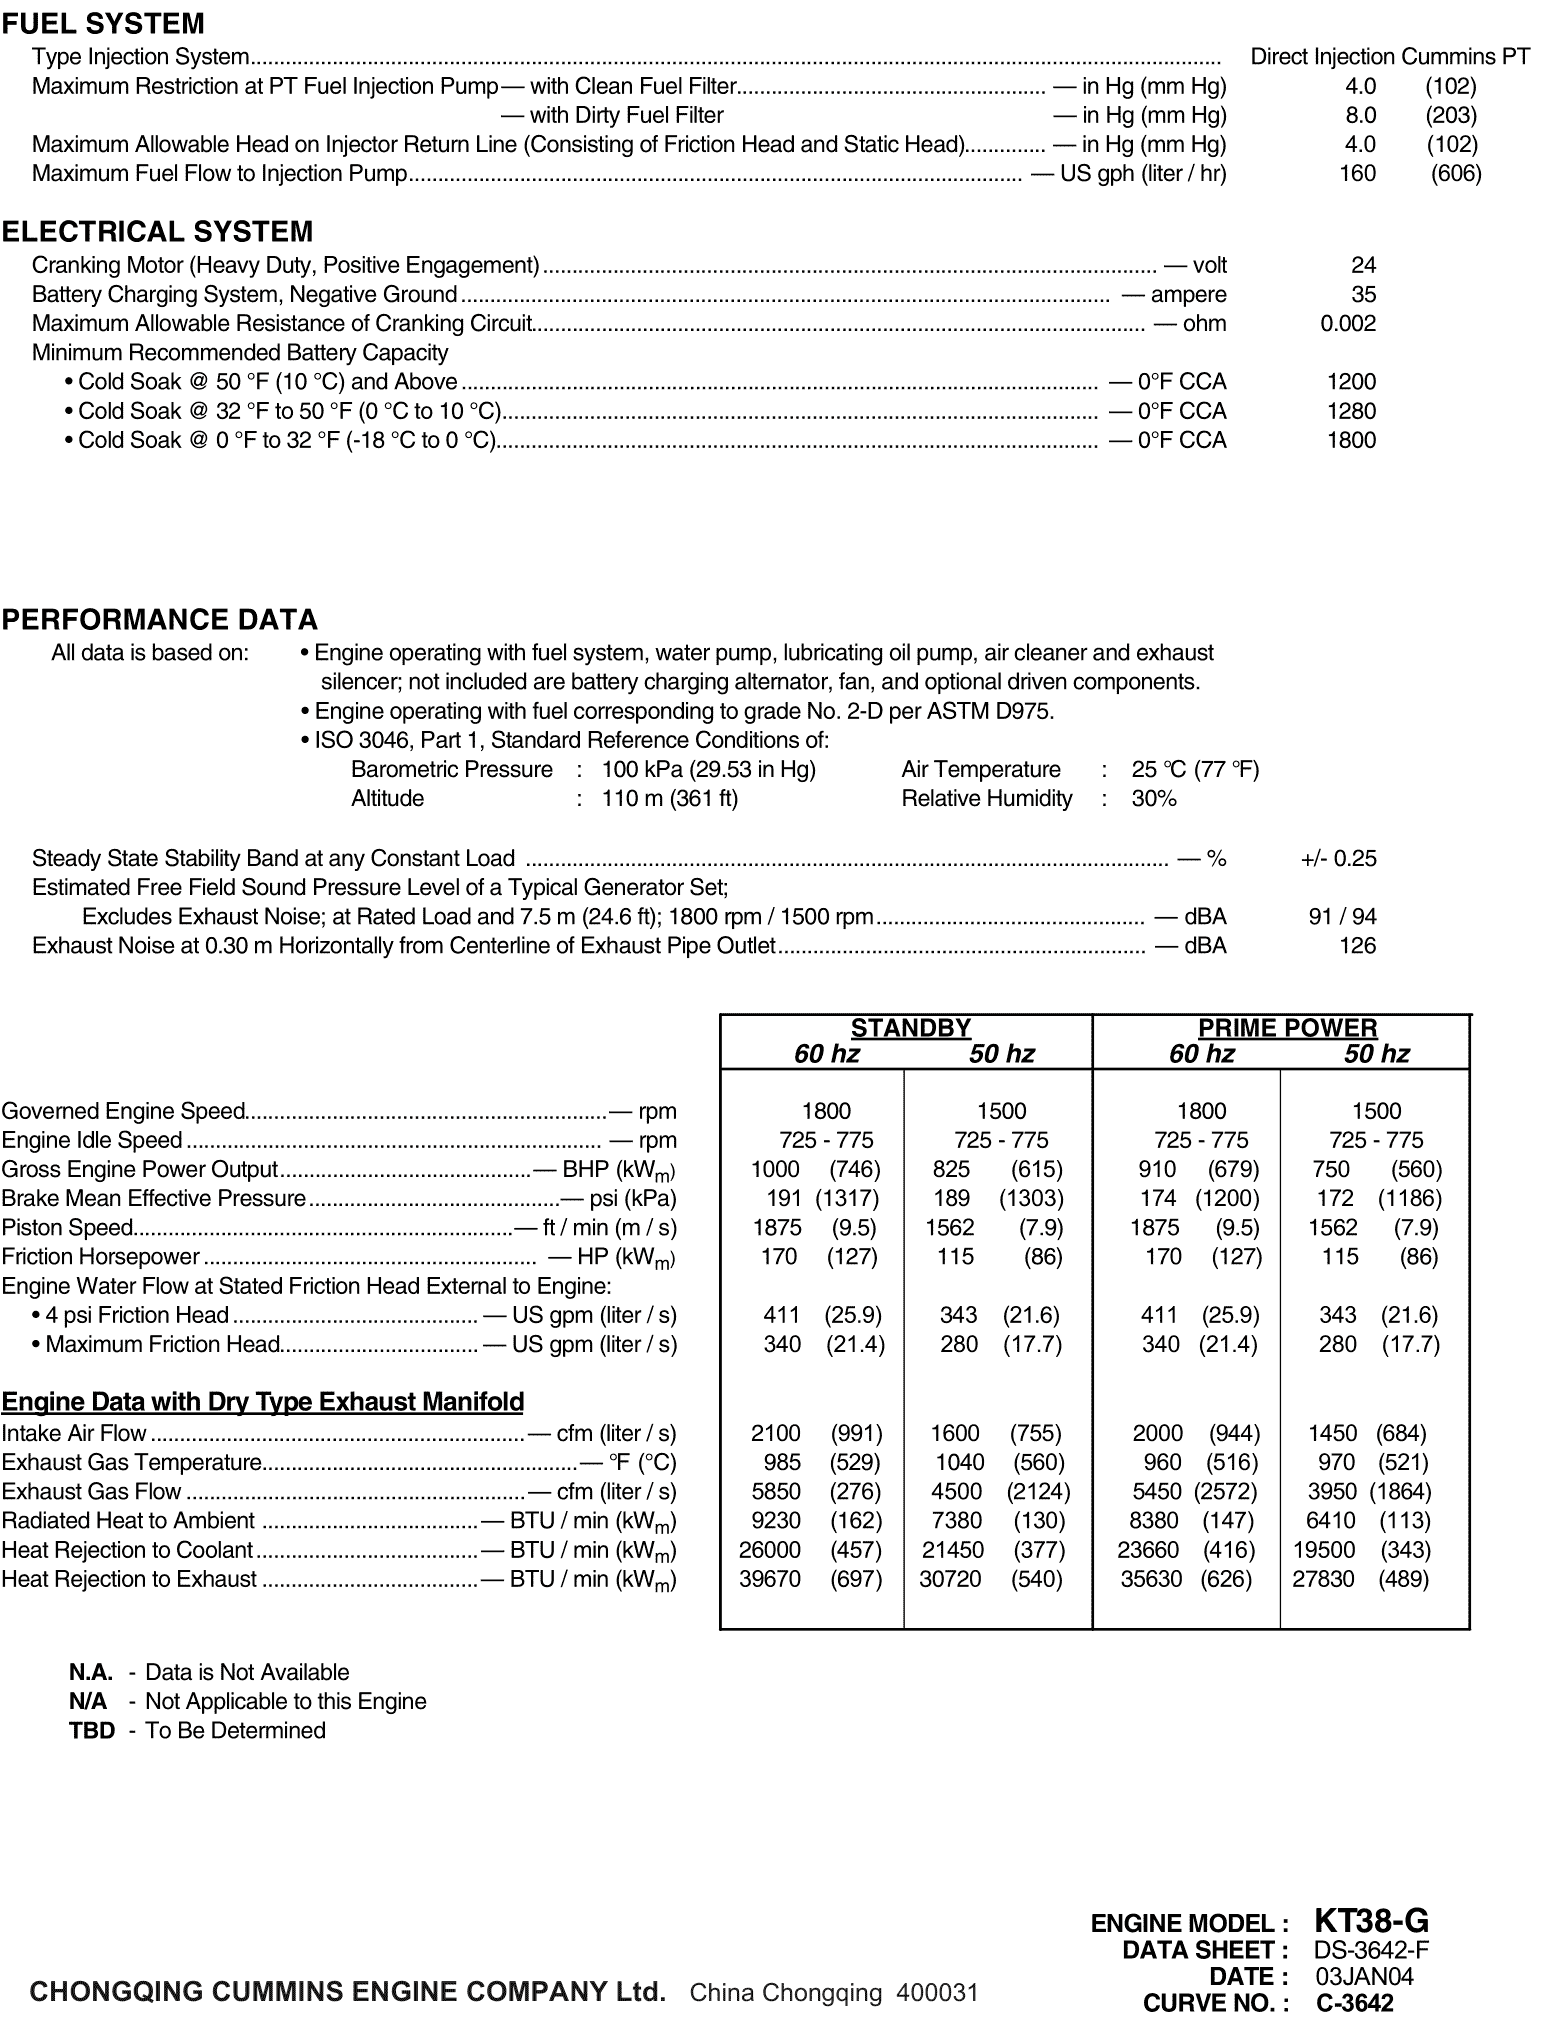 Cummins KT38-G datasheet